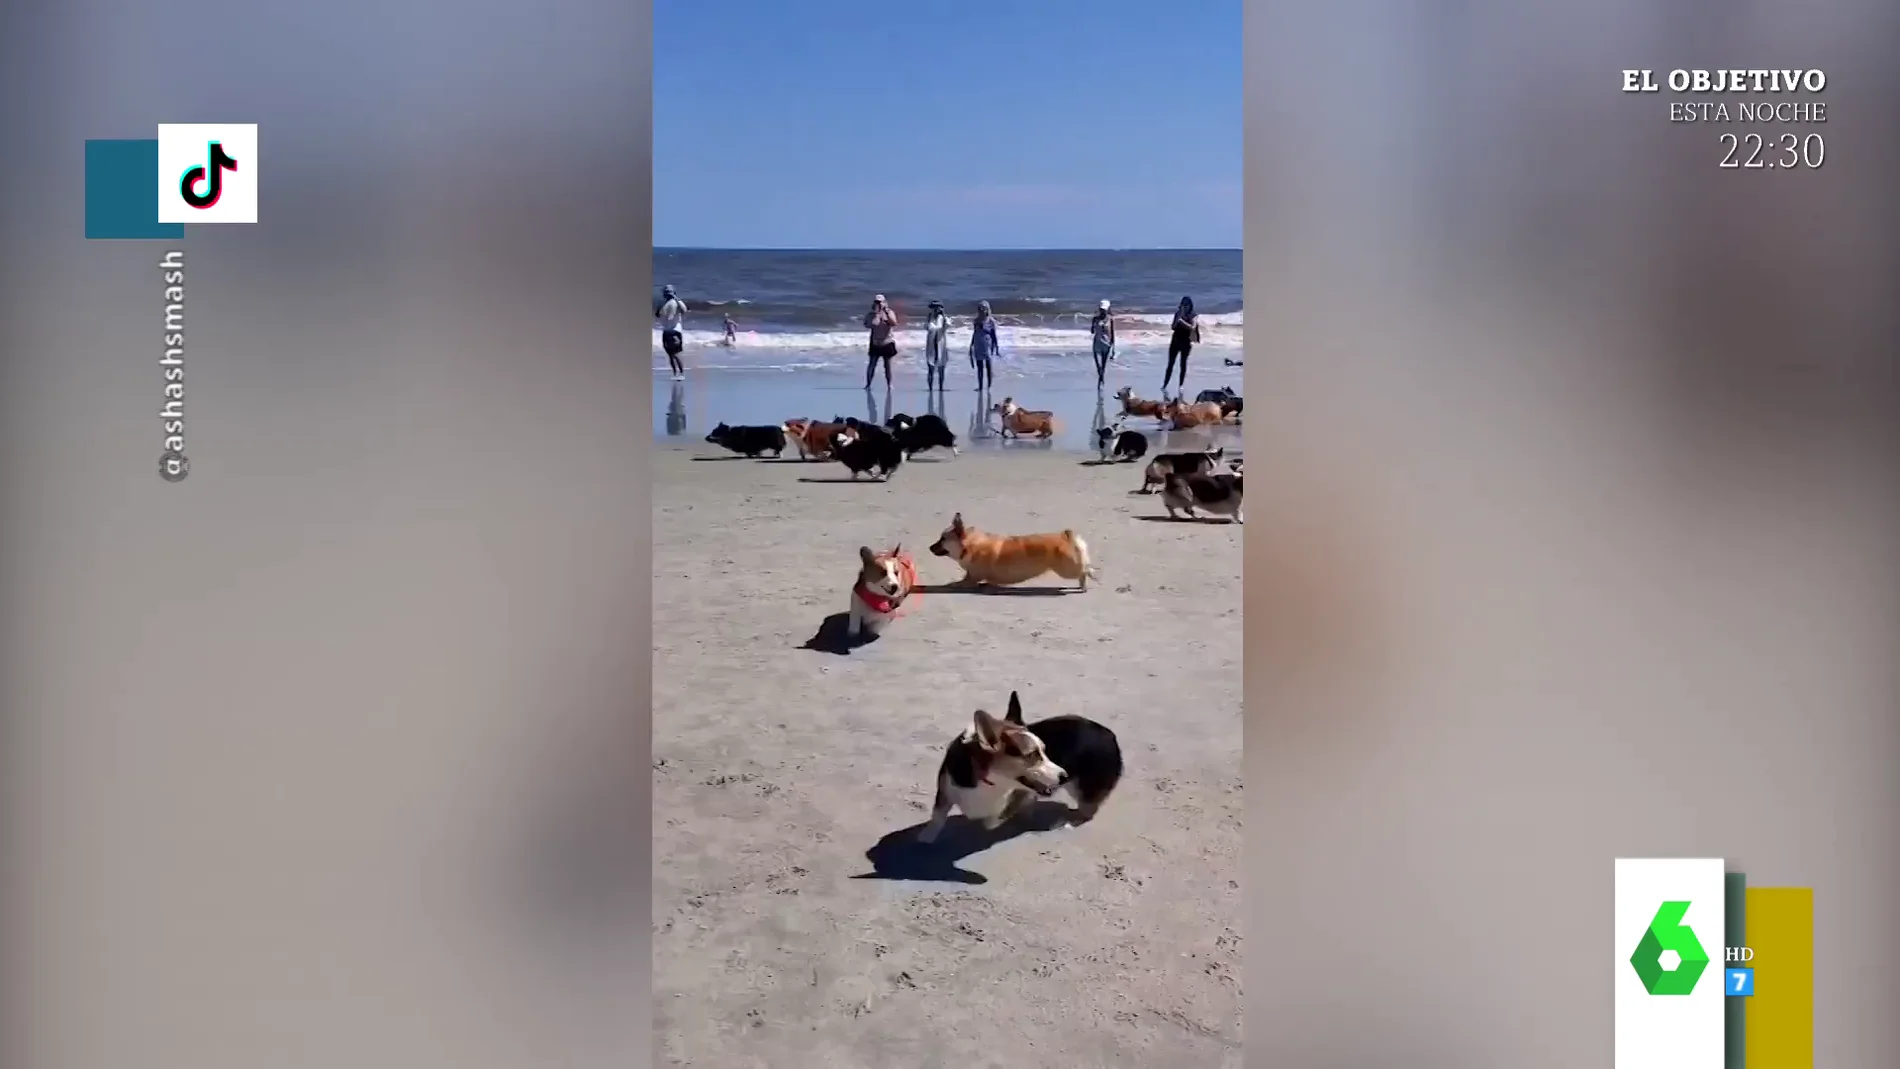 El hilarante caos de una carrera de perros en una playa de EEUU